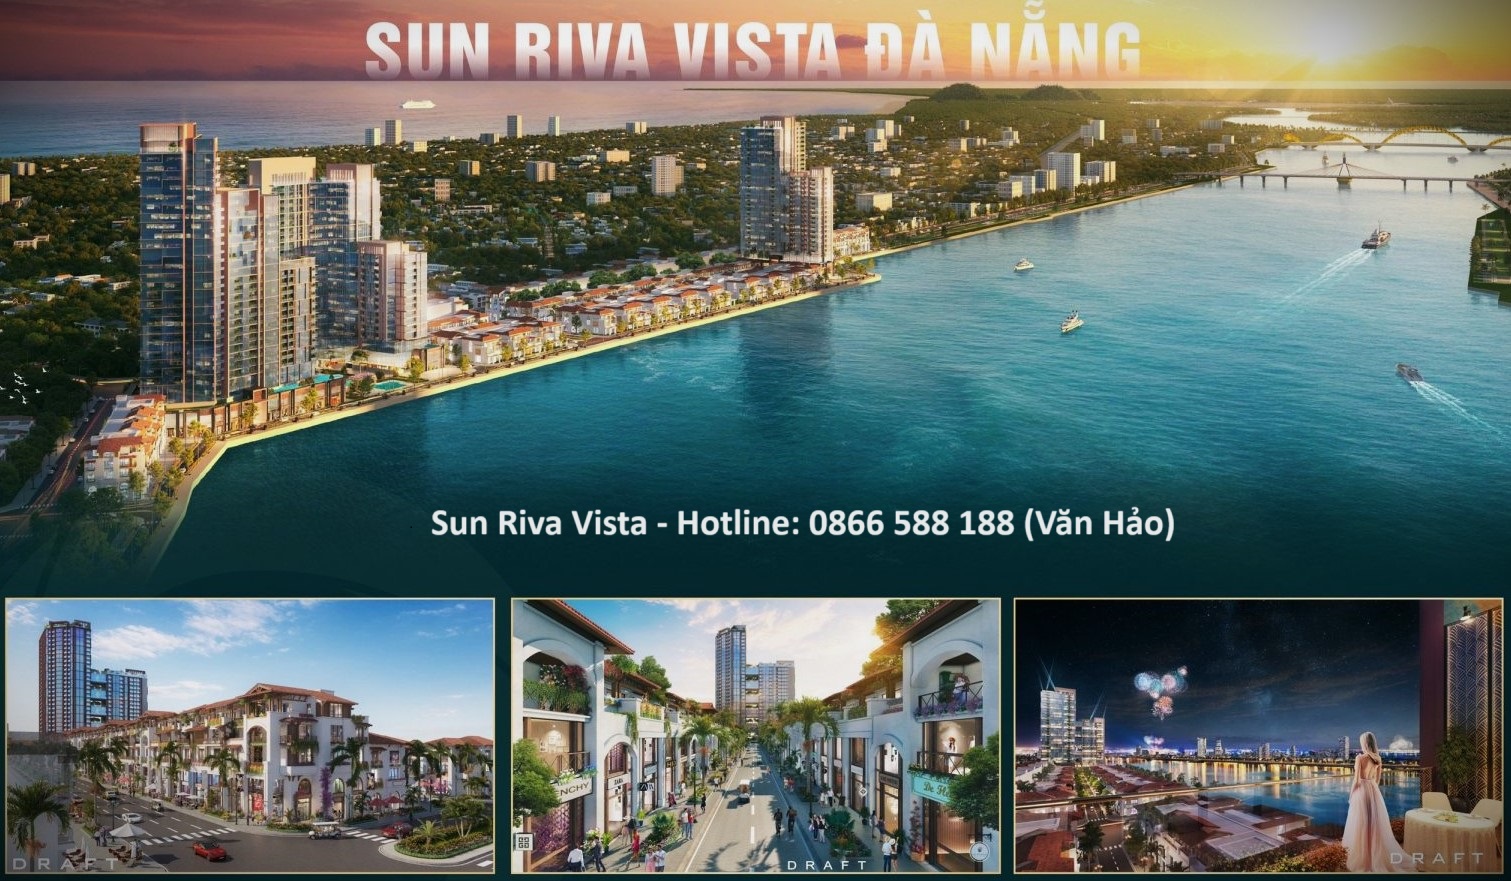 Sun-Riva-Vista-sun-group-DaNang